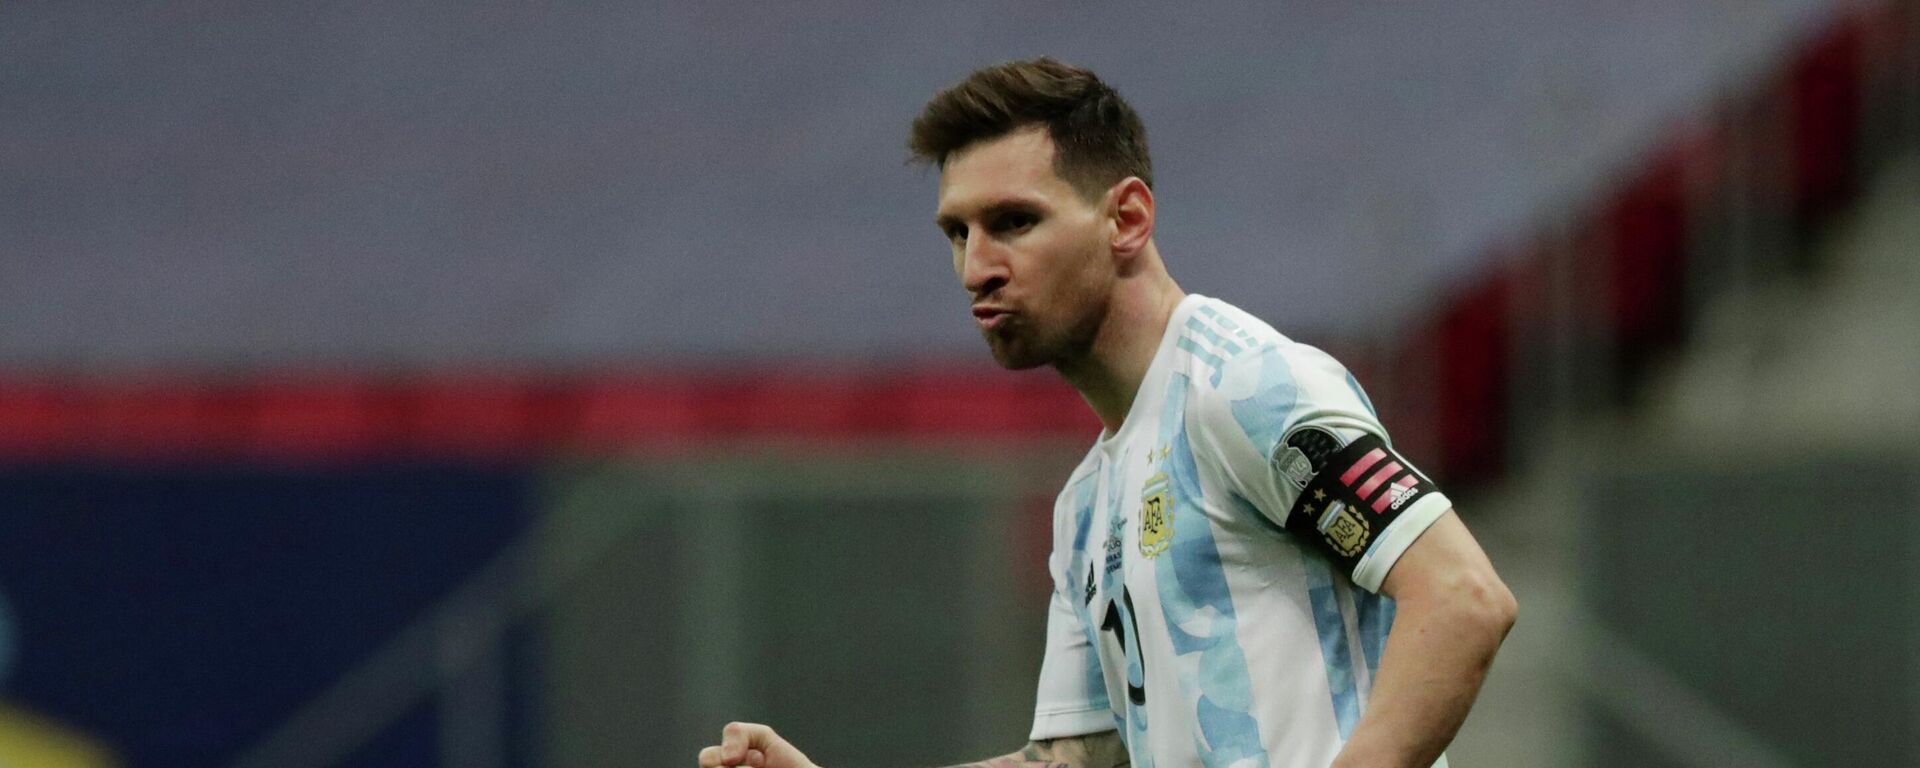 Lionel Messi, futbolista argentino - Sputnik Mundo, 1920, 10.07.2021